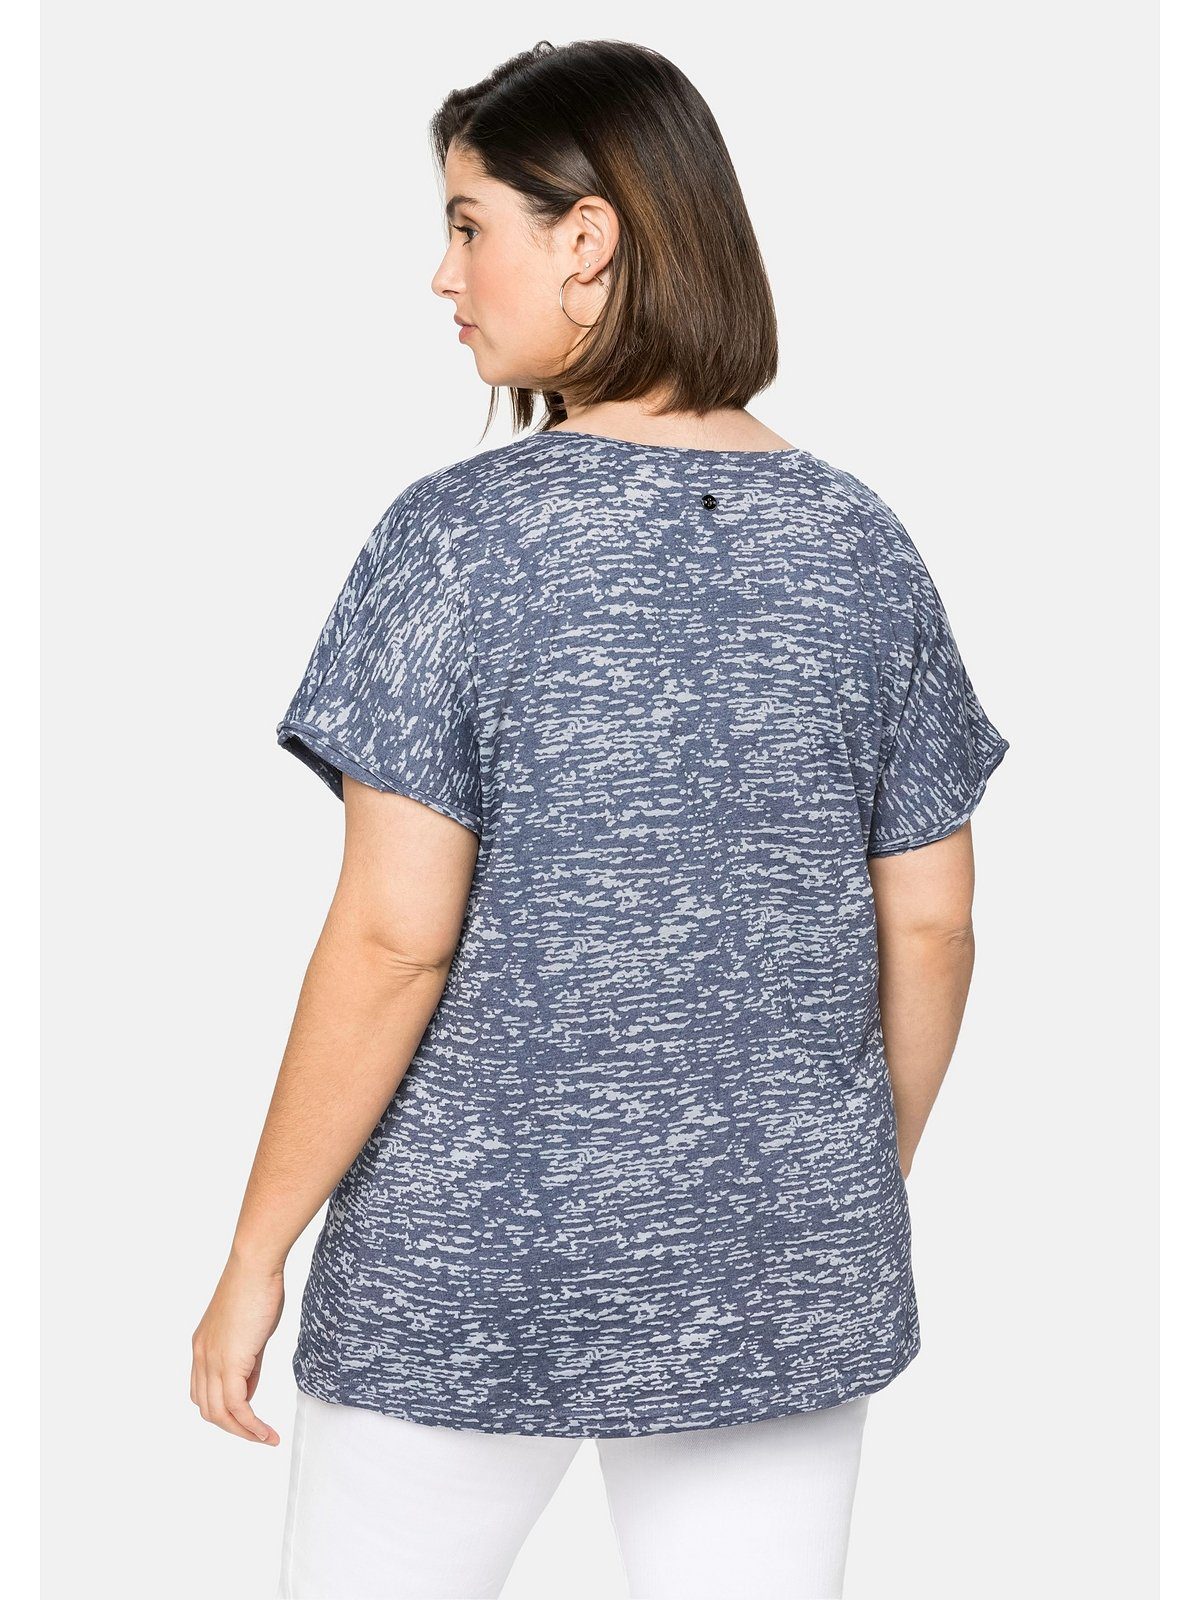 Sheego T-Shirt Große Größen leicht Ausbrennermuster, transparent marine mit